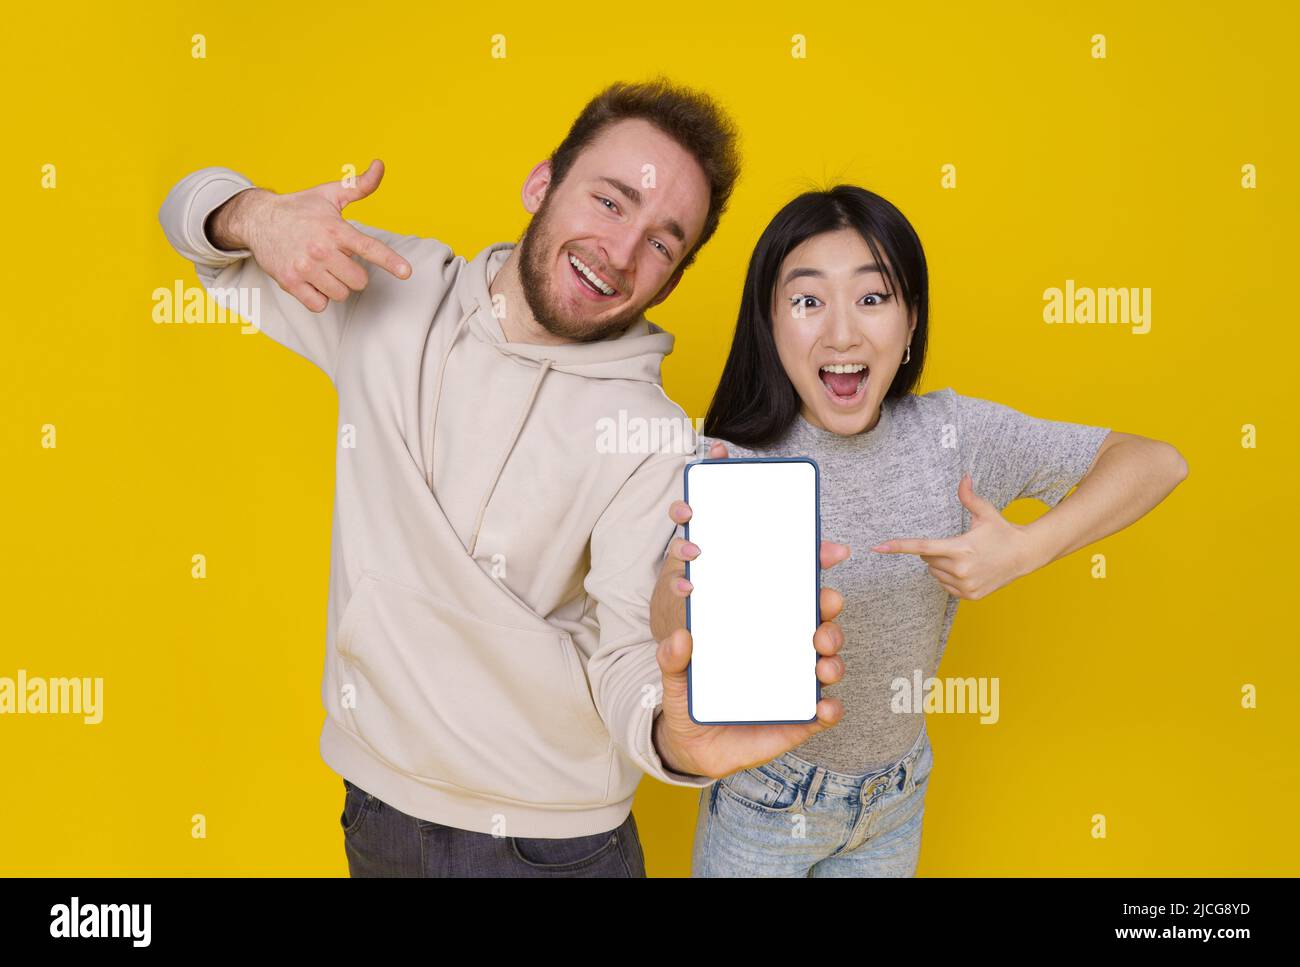 Le gars caucasien et la fille asiatique montrent les pouces vers le haut excité tenant smartphone avec blanc écran blanc, publicité d'application mobile isolée sur fond jaune. Positionnement du produit. Offre exceptionnelle. Banque D'Images